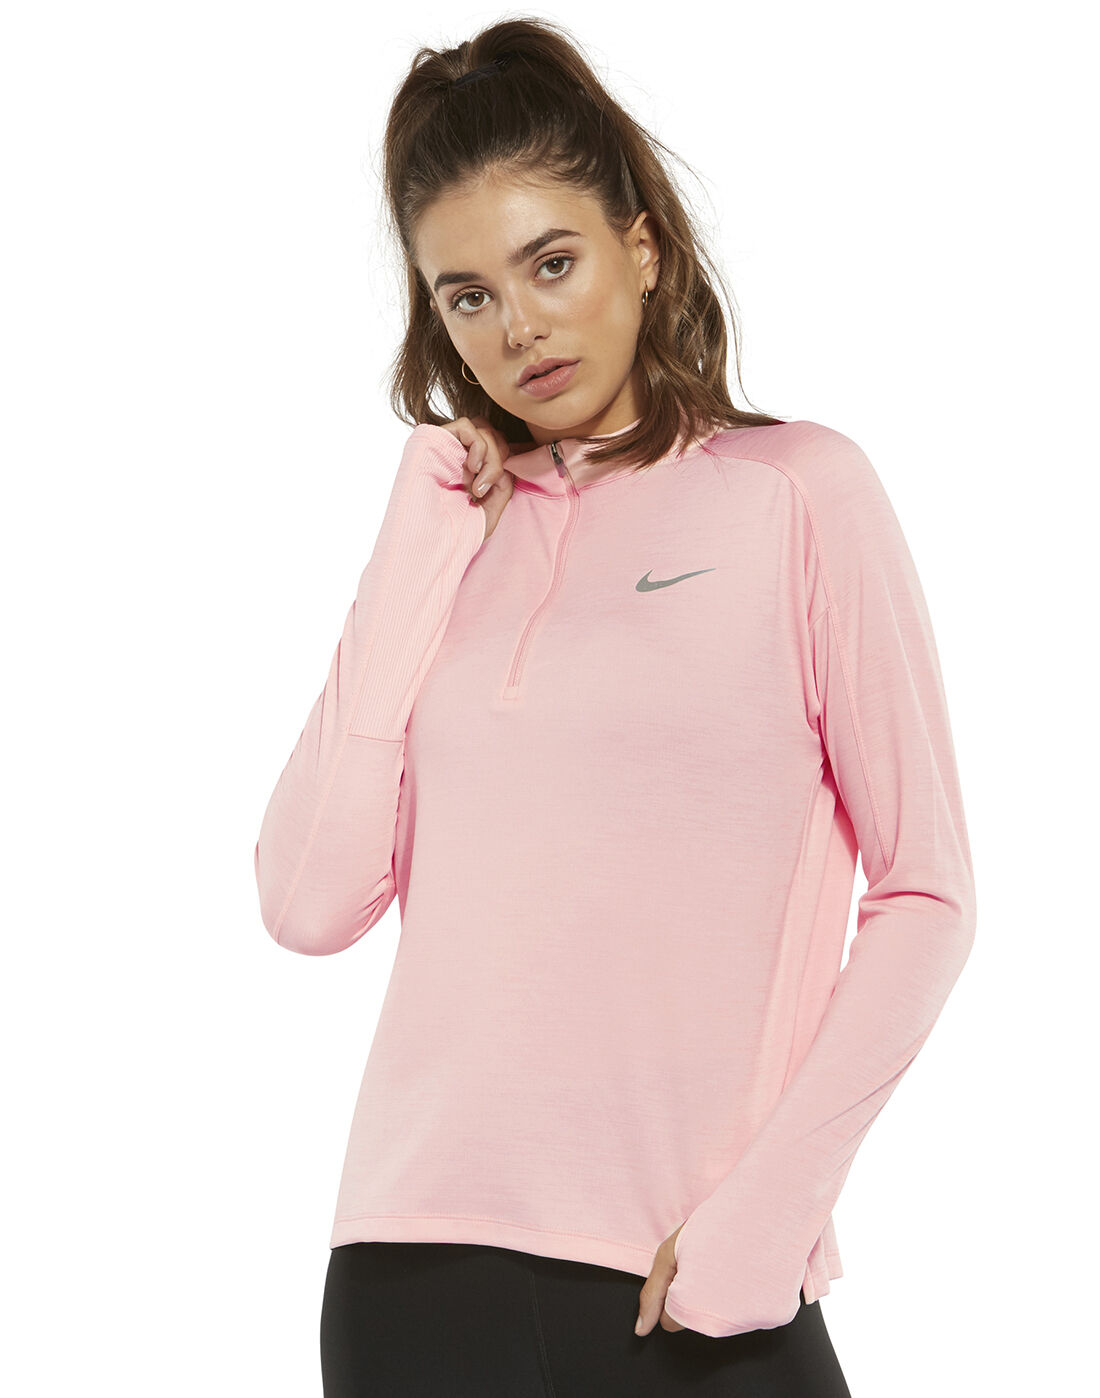 Women's Pink Nike Pacer Half Zip | Life 